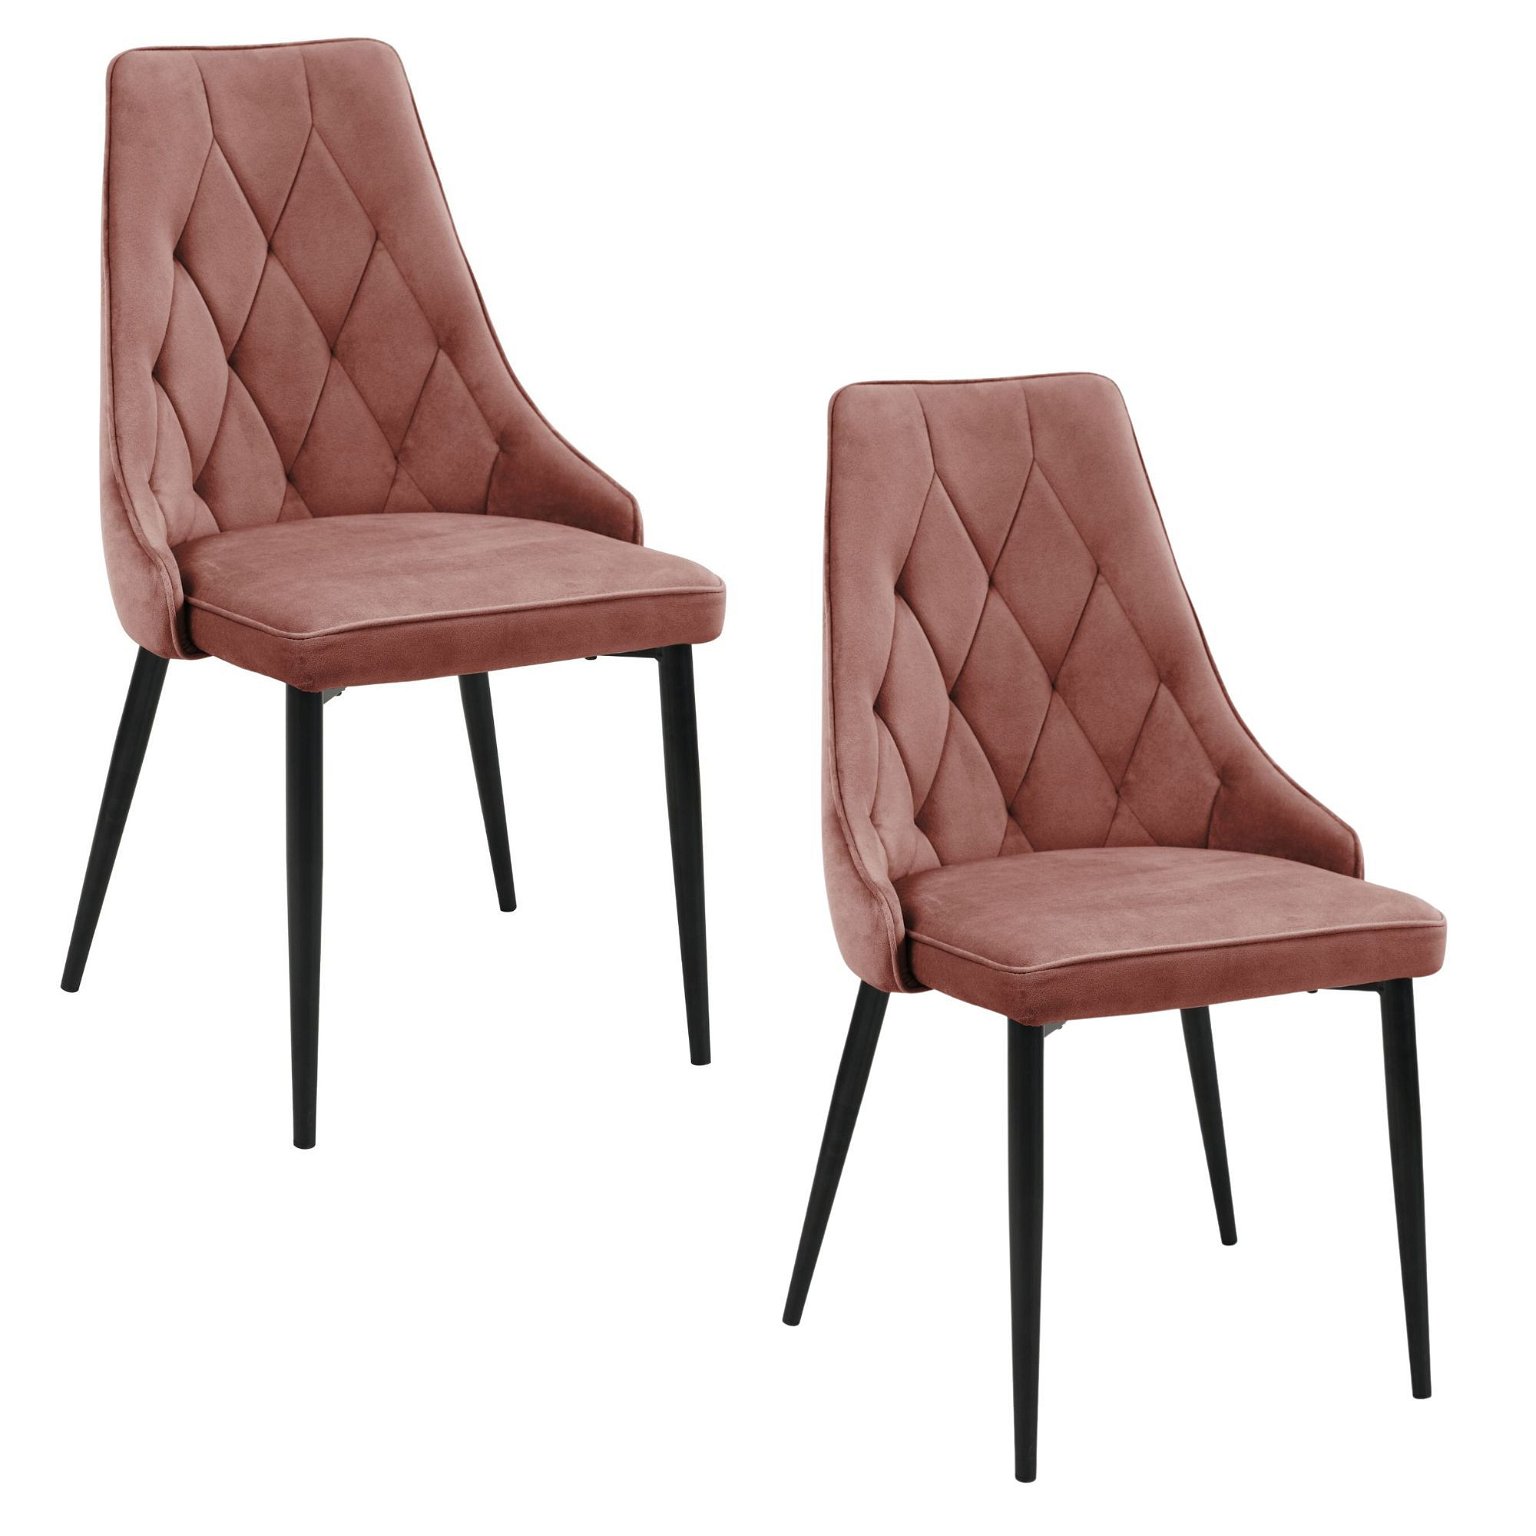 2-ių kėdžių komplektas SJ.054, rožinė